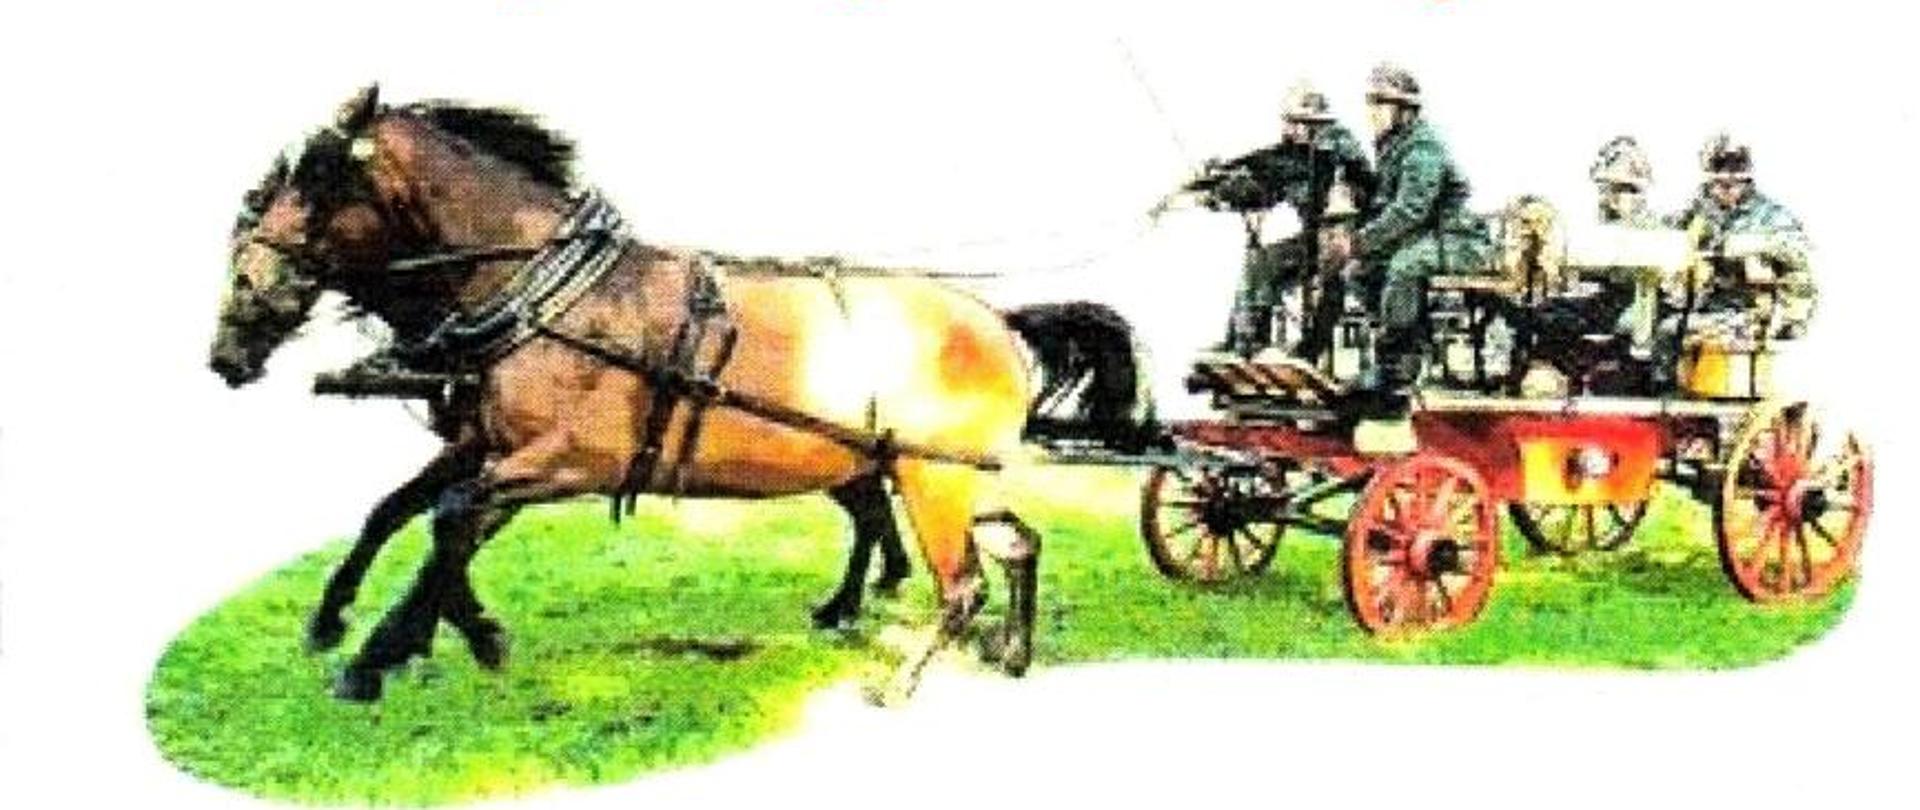 Na grafice widać zaprzęg konny z sikawką strażacką. Dwa konie ciągną wóz na którym jest 4 strażaków i osprzęt do gaszenia pożaru. 